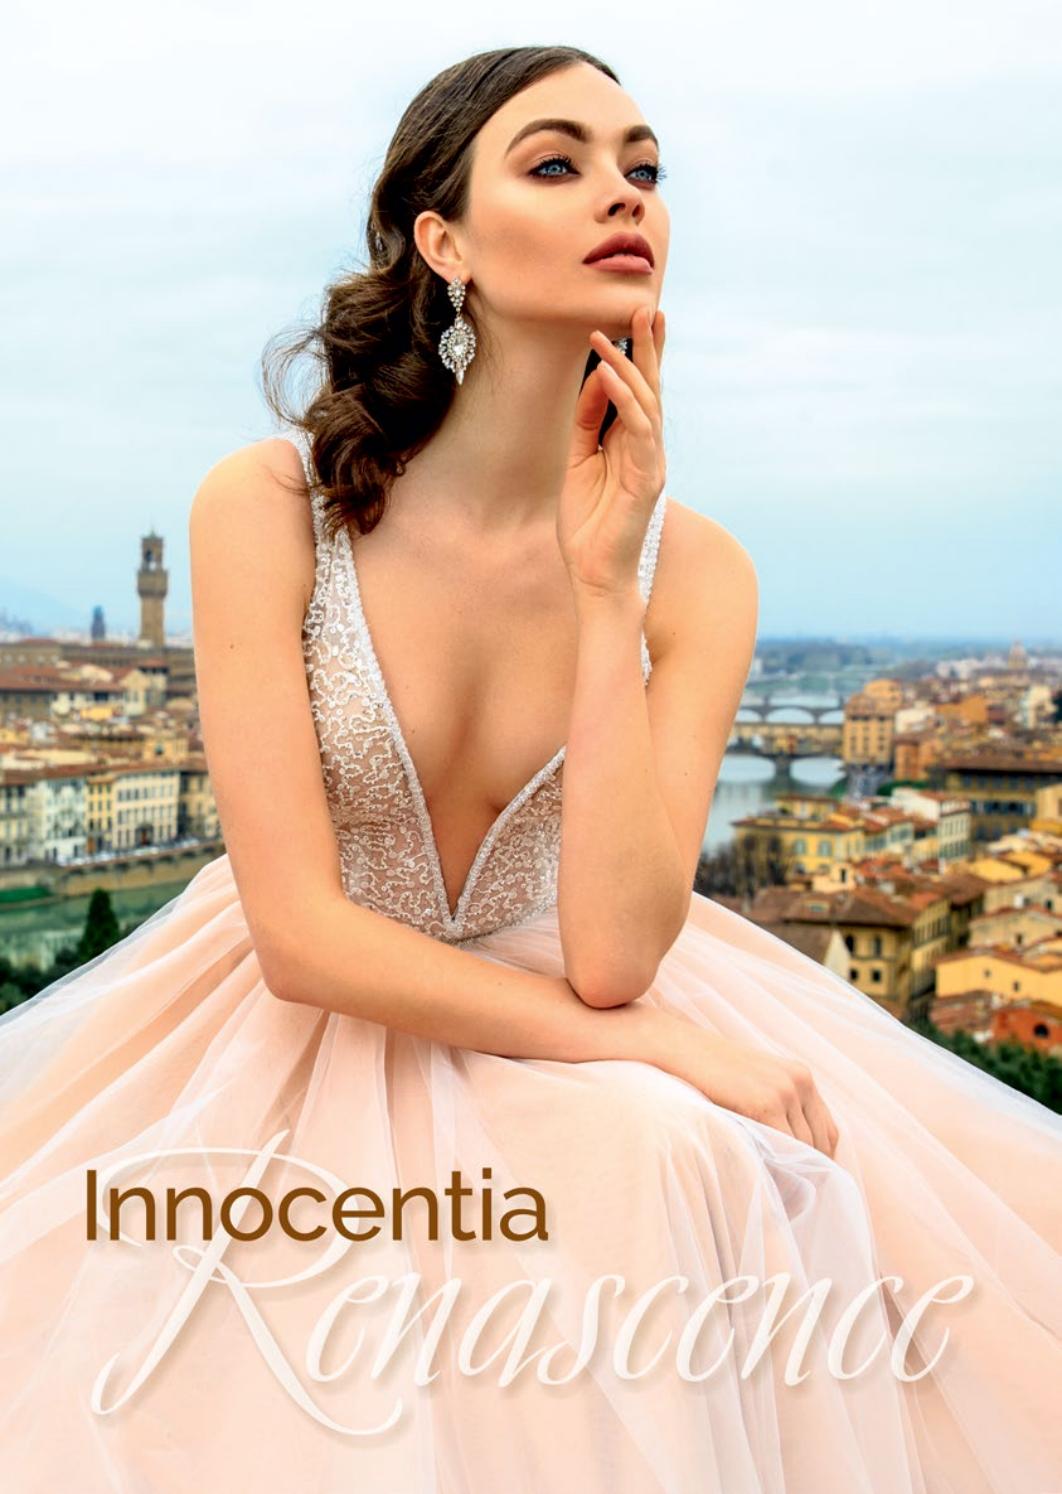 意大利婚纱设计画册/素材/书籍/目录/杂志/婚纱品牌有哪些/Innocentia 2018